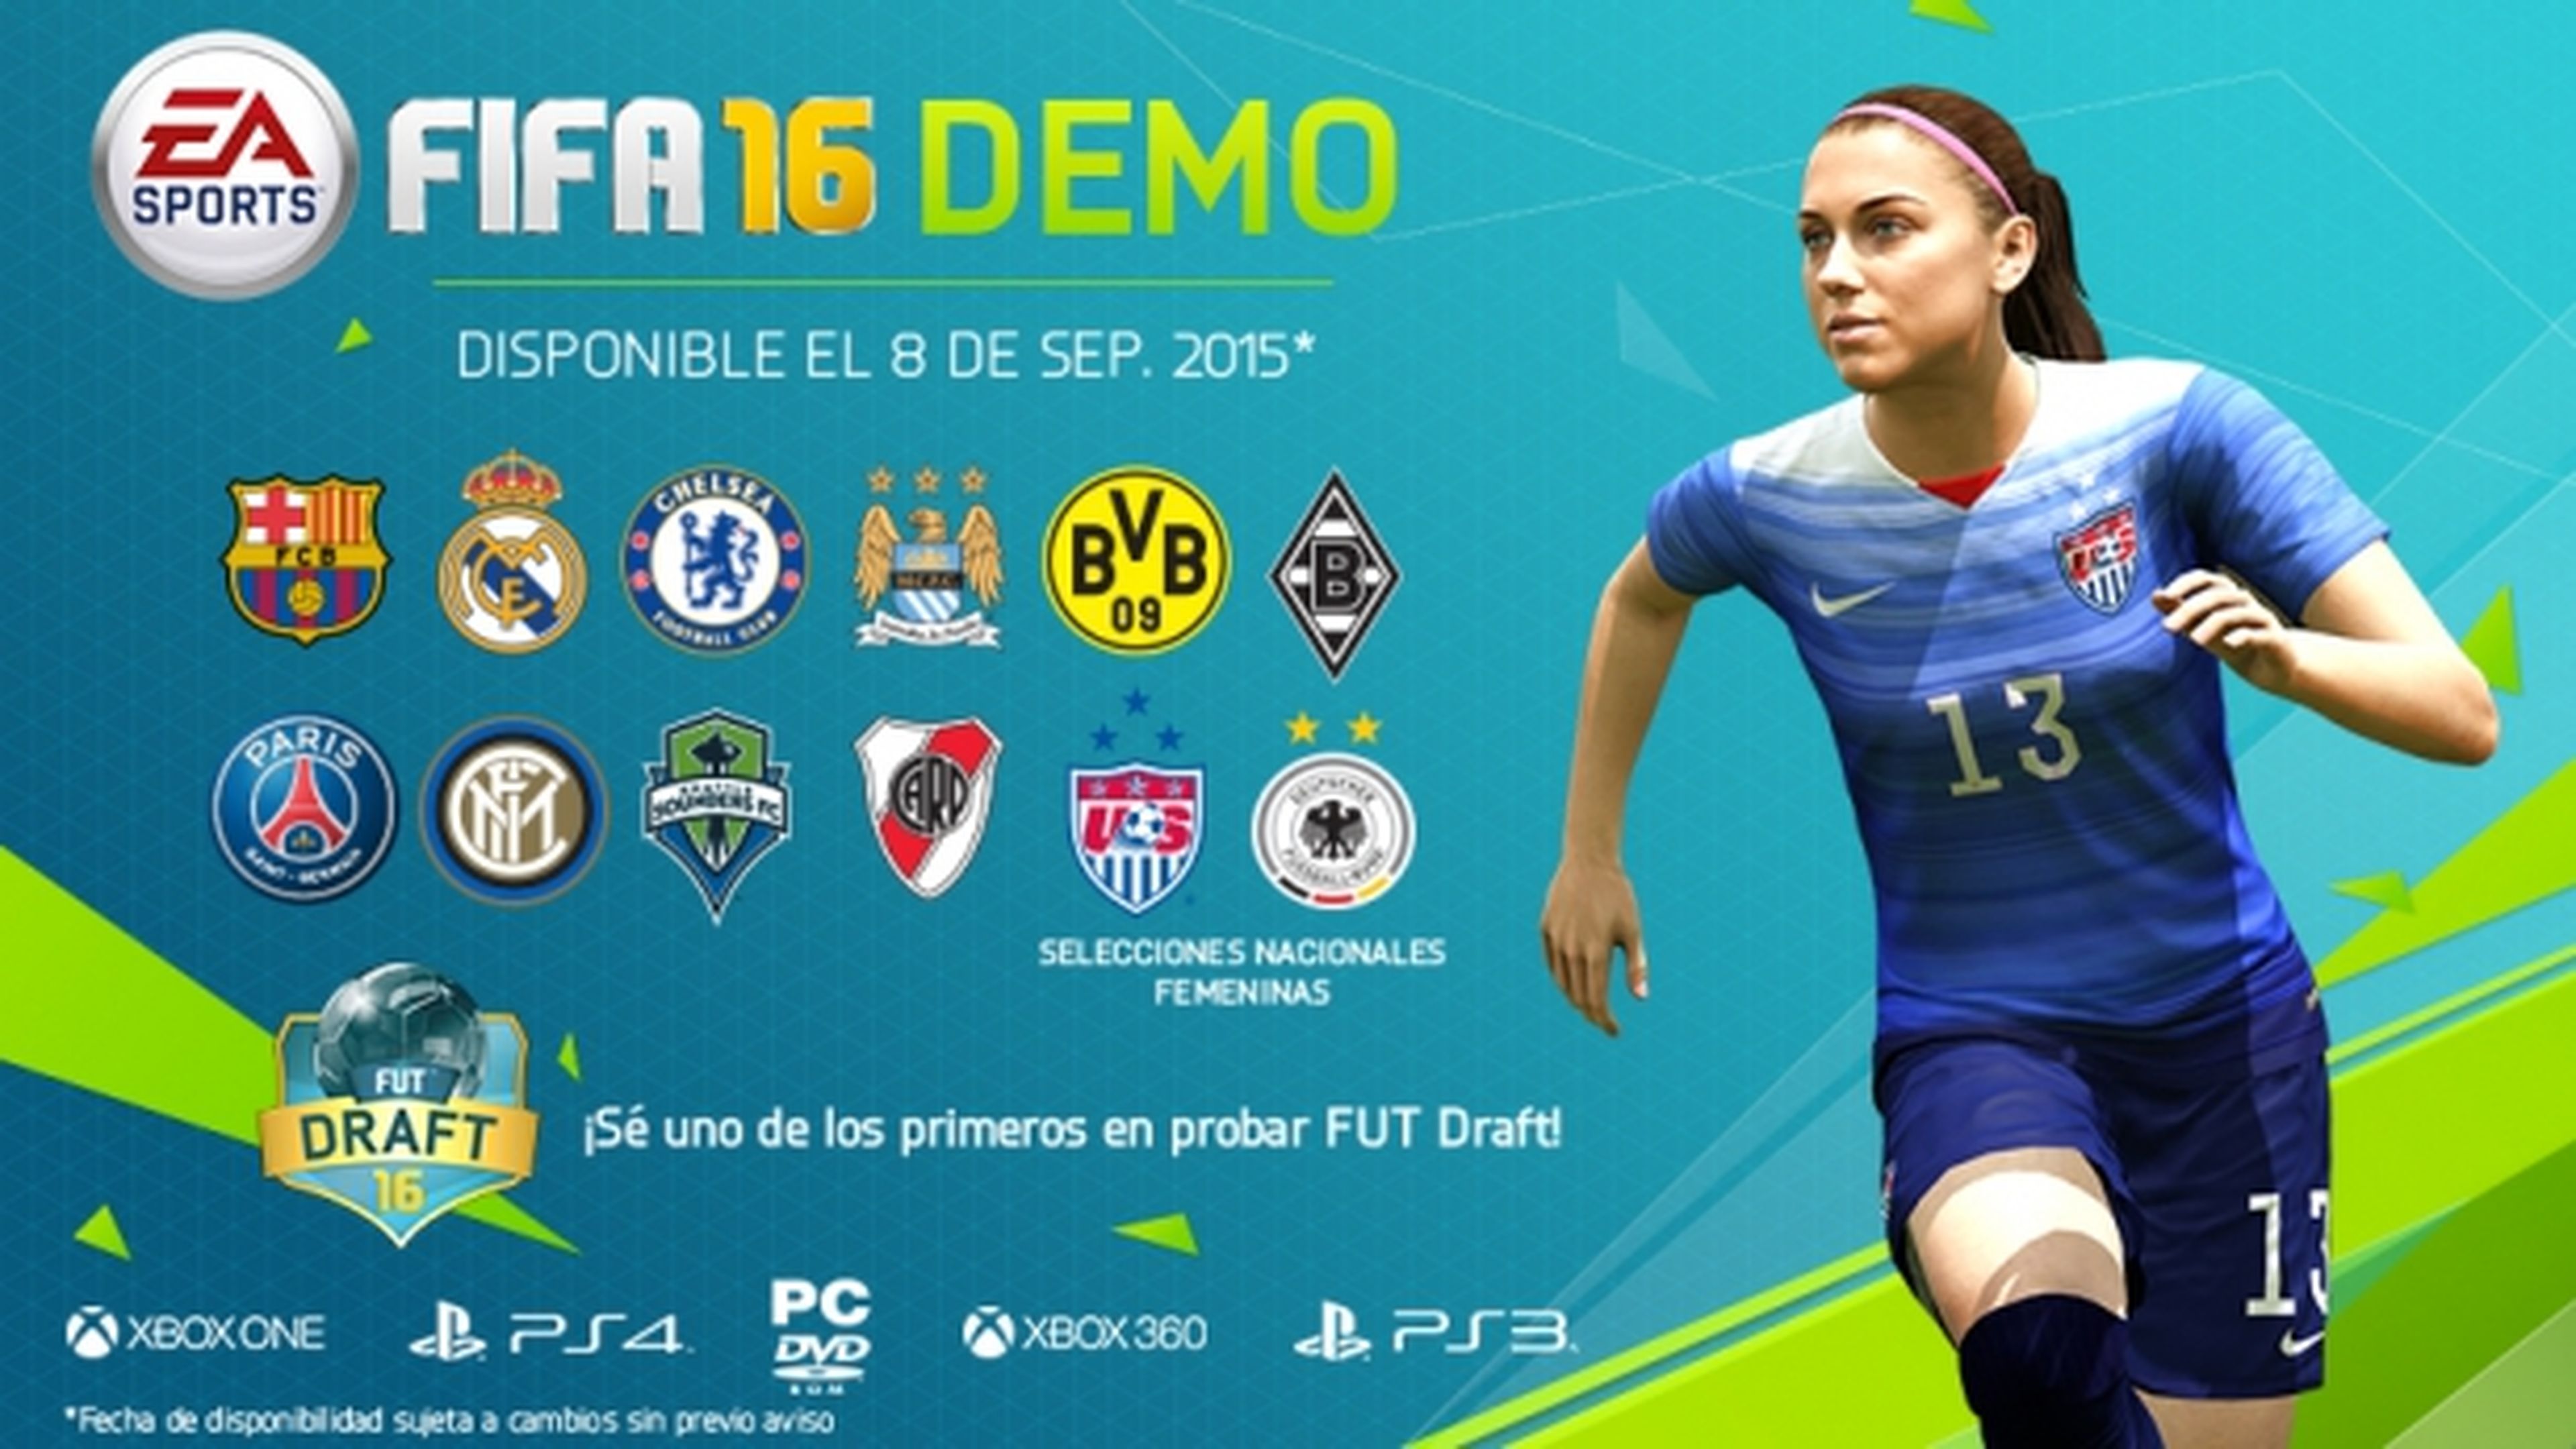 La demo de FIFA 16 se estrena el 8 de septiembre e incluirá un montón de contenido